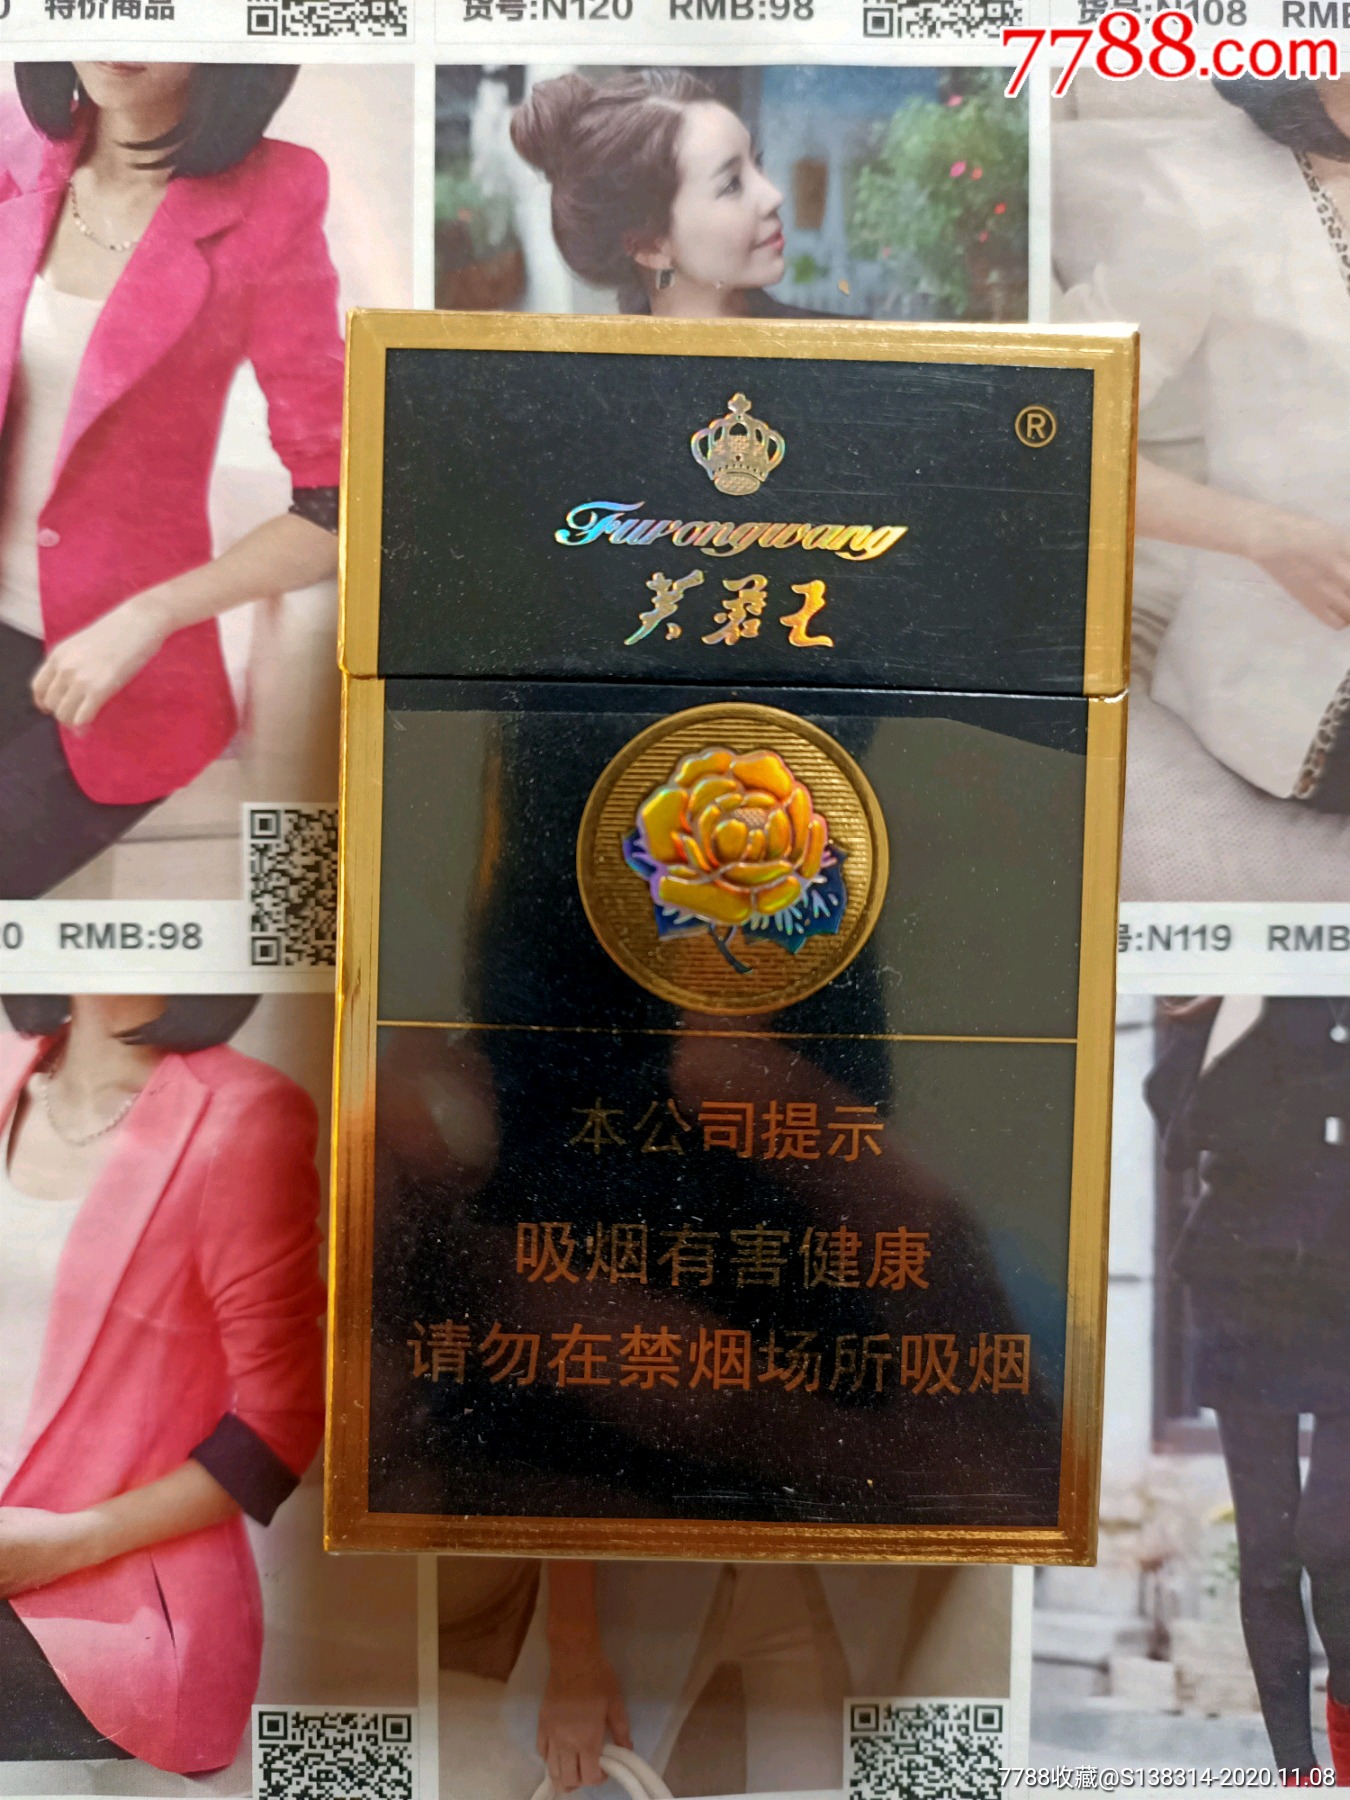 芙蓉王香烟种类图片